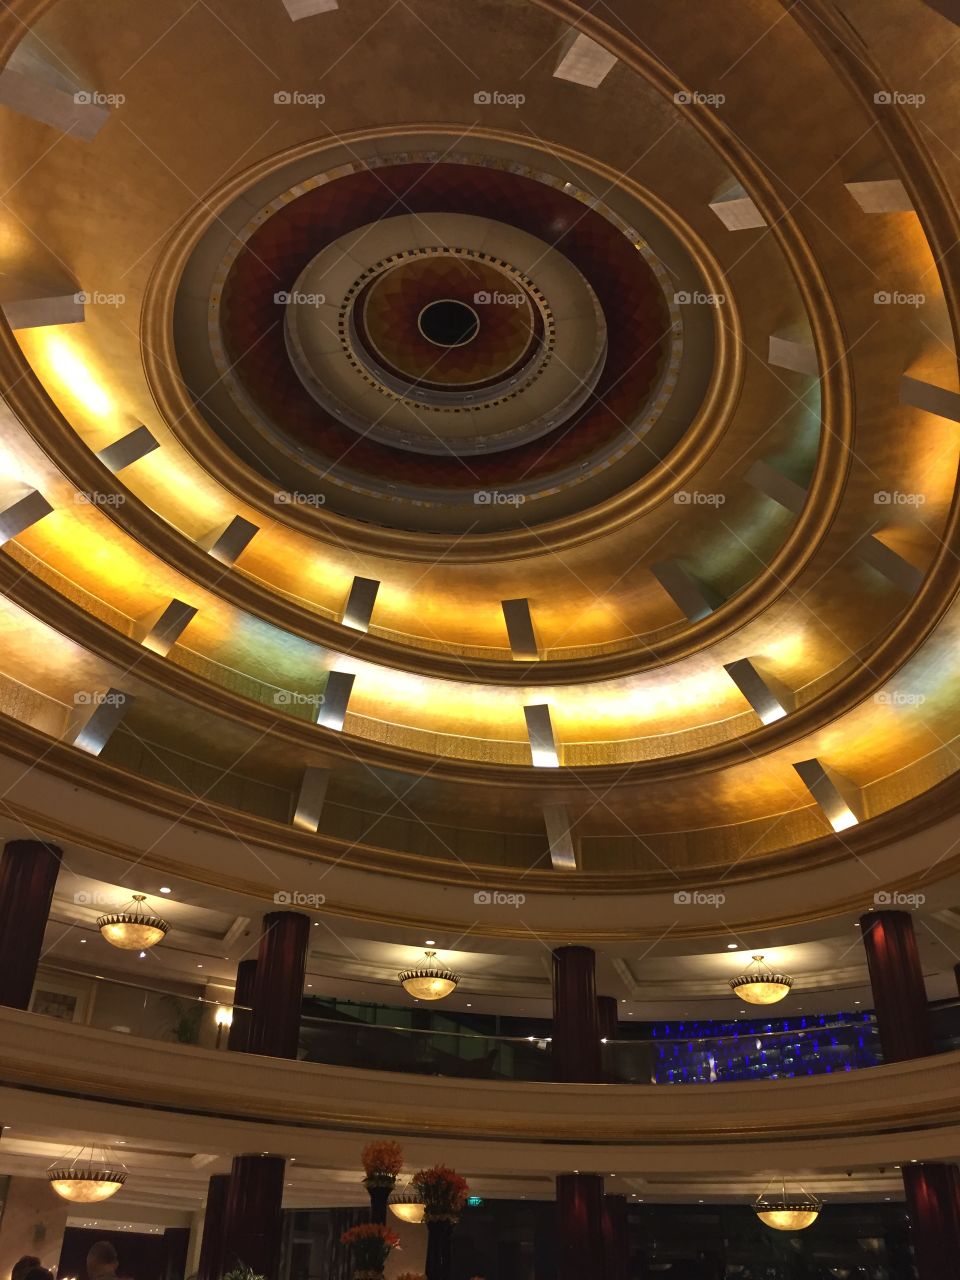 Hotel Lobby Ceiling.  Abu Dhabi